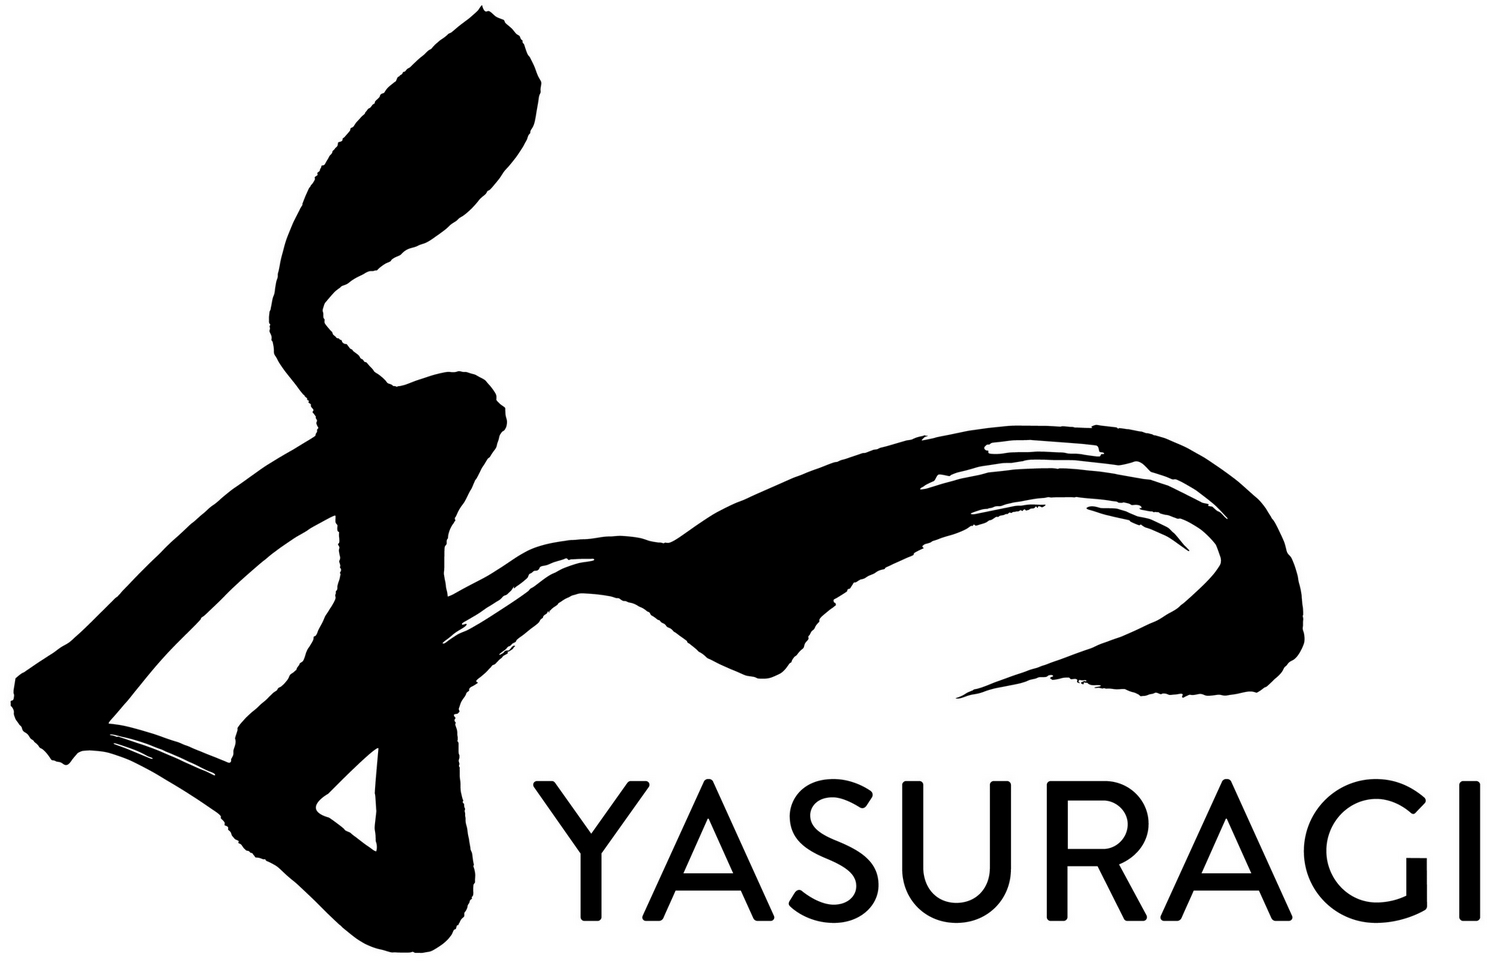 YASURAGI